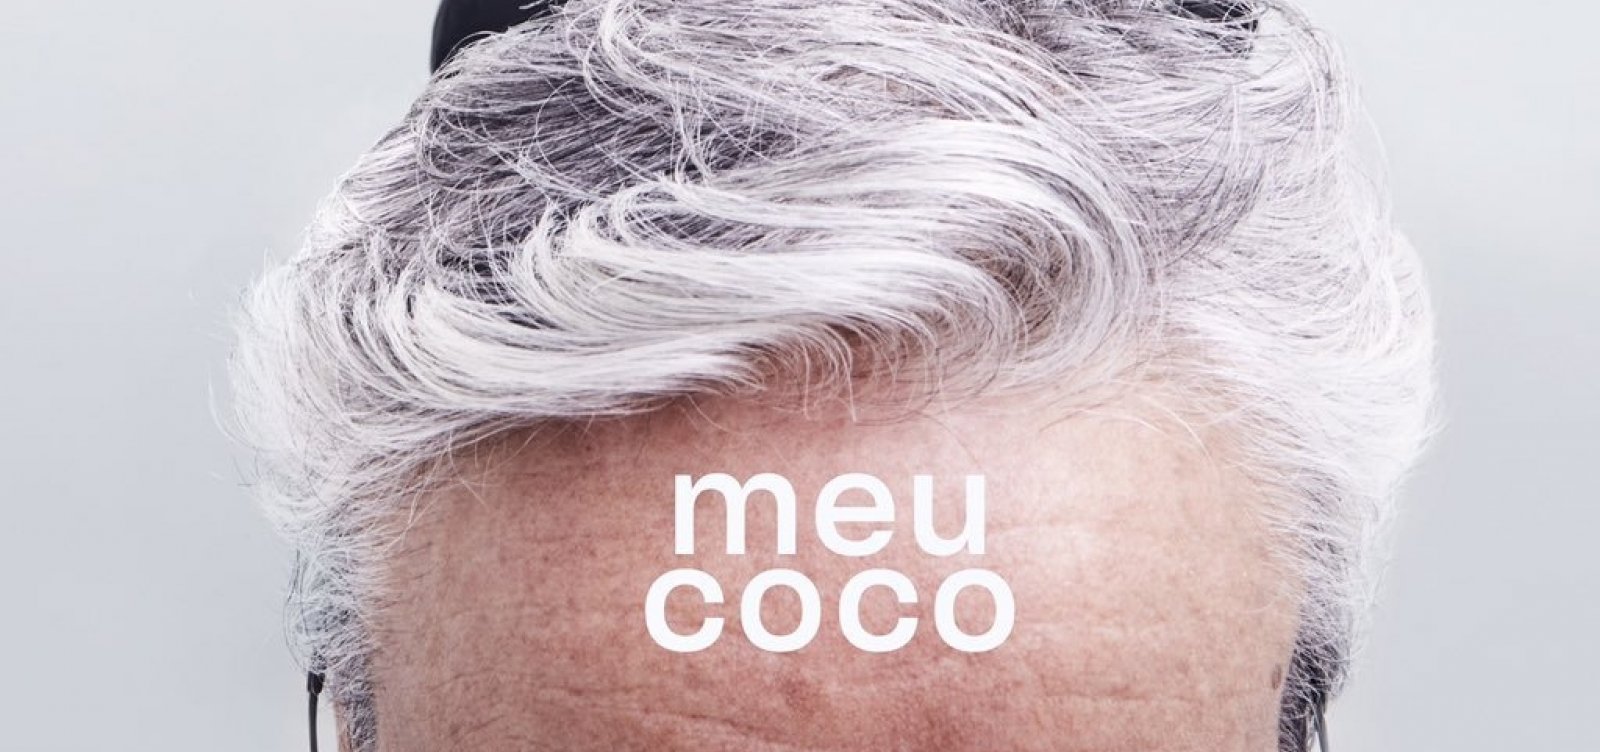 Caetano Veloso divulga capa de 'Meu coco', seu novo álbum que será lançado dia 21